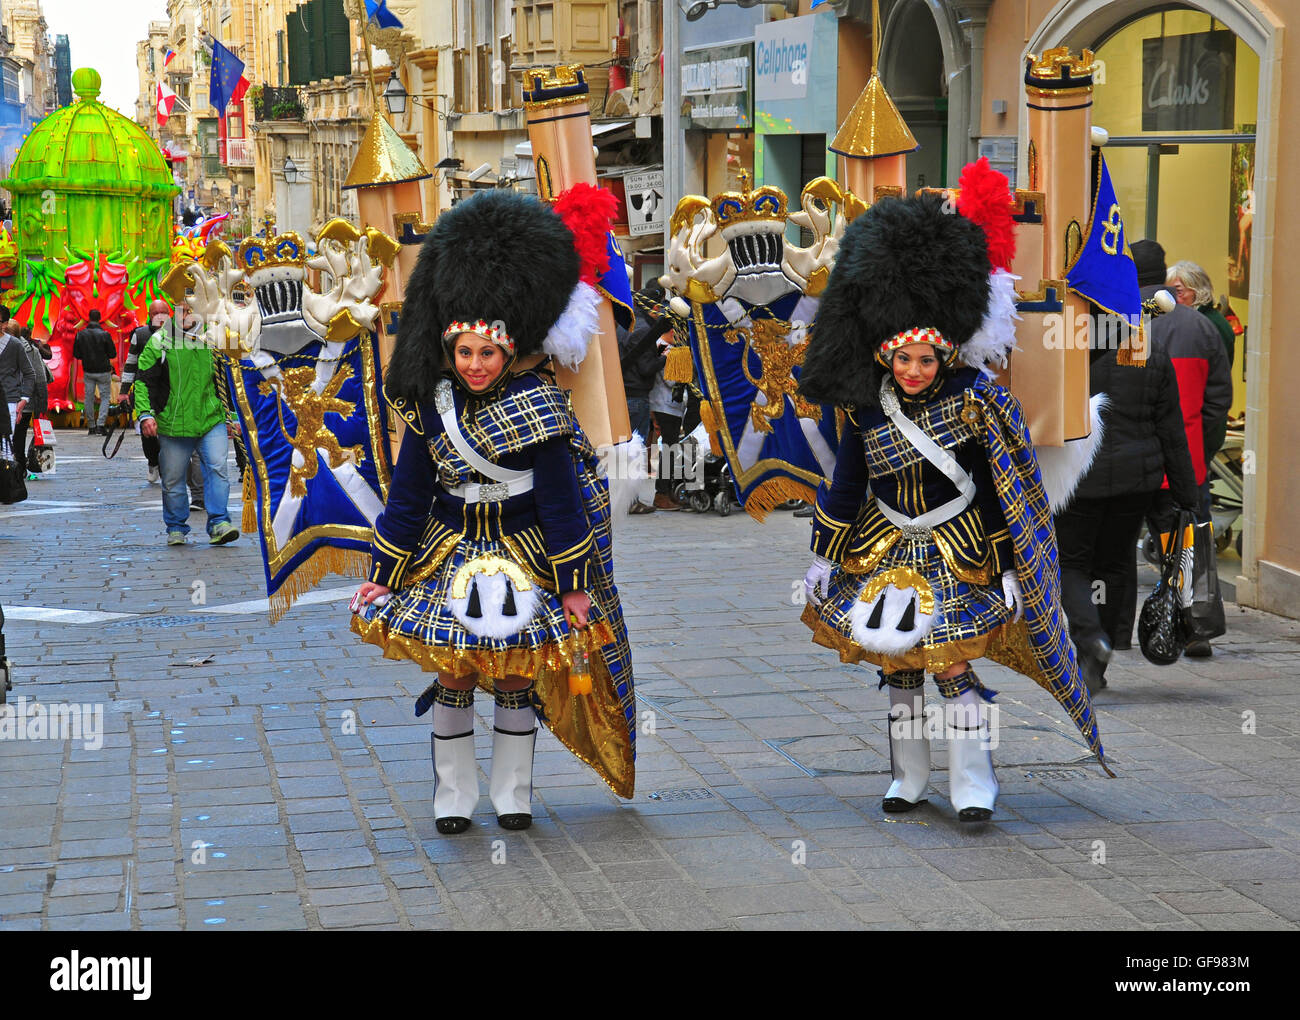 La Valletta, Malta - 1 Marzo: carnevale di primavera sulla strada del centro cittadino di La Valletta il 1 marzo 2014. Il carnevale a Malta detiene da febbraio Foto Stock